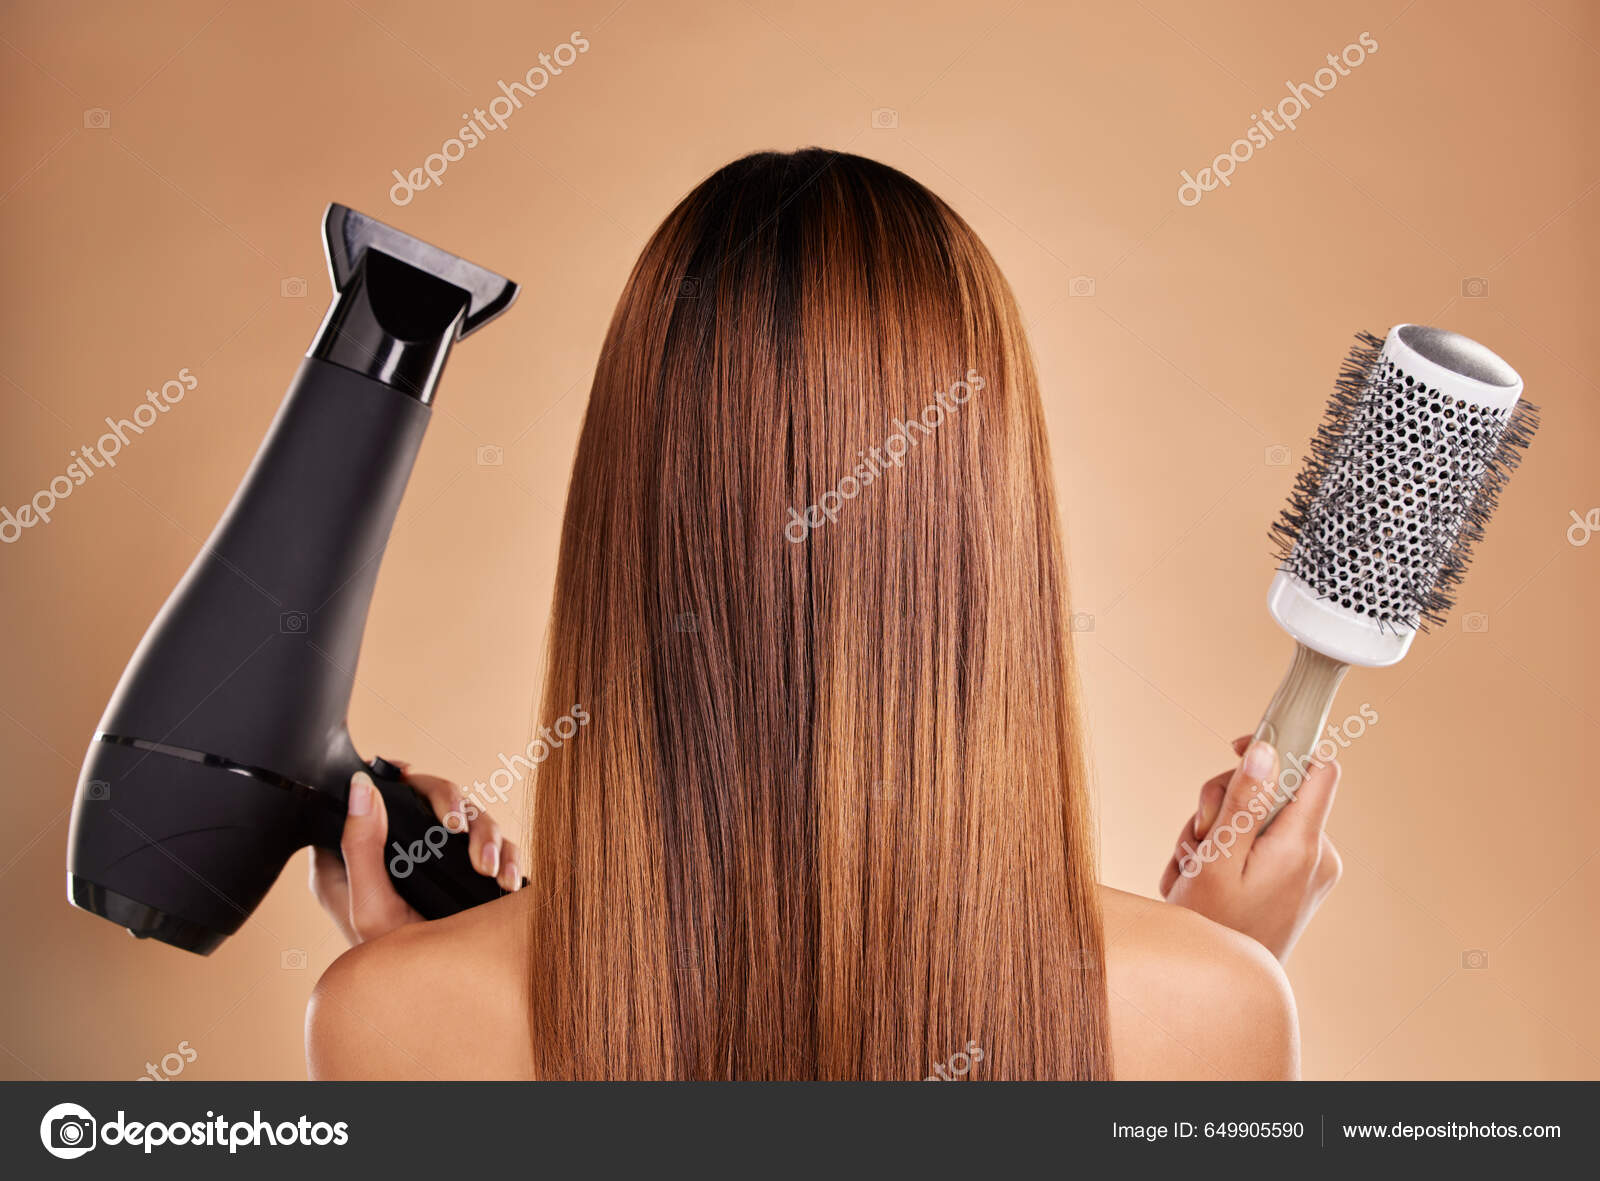 Moda salão de cabeleireiro secador de cabelo ferramentas de corte